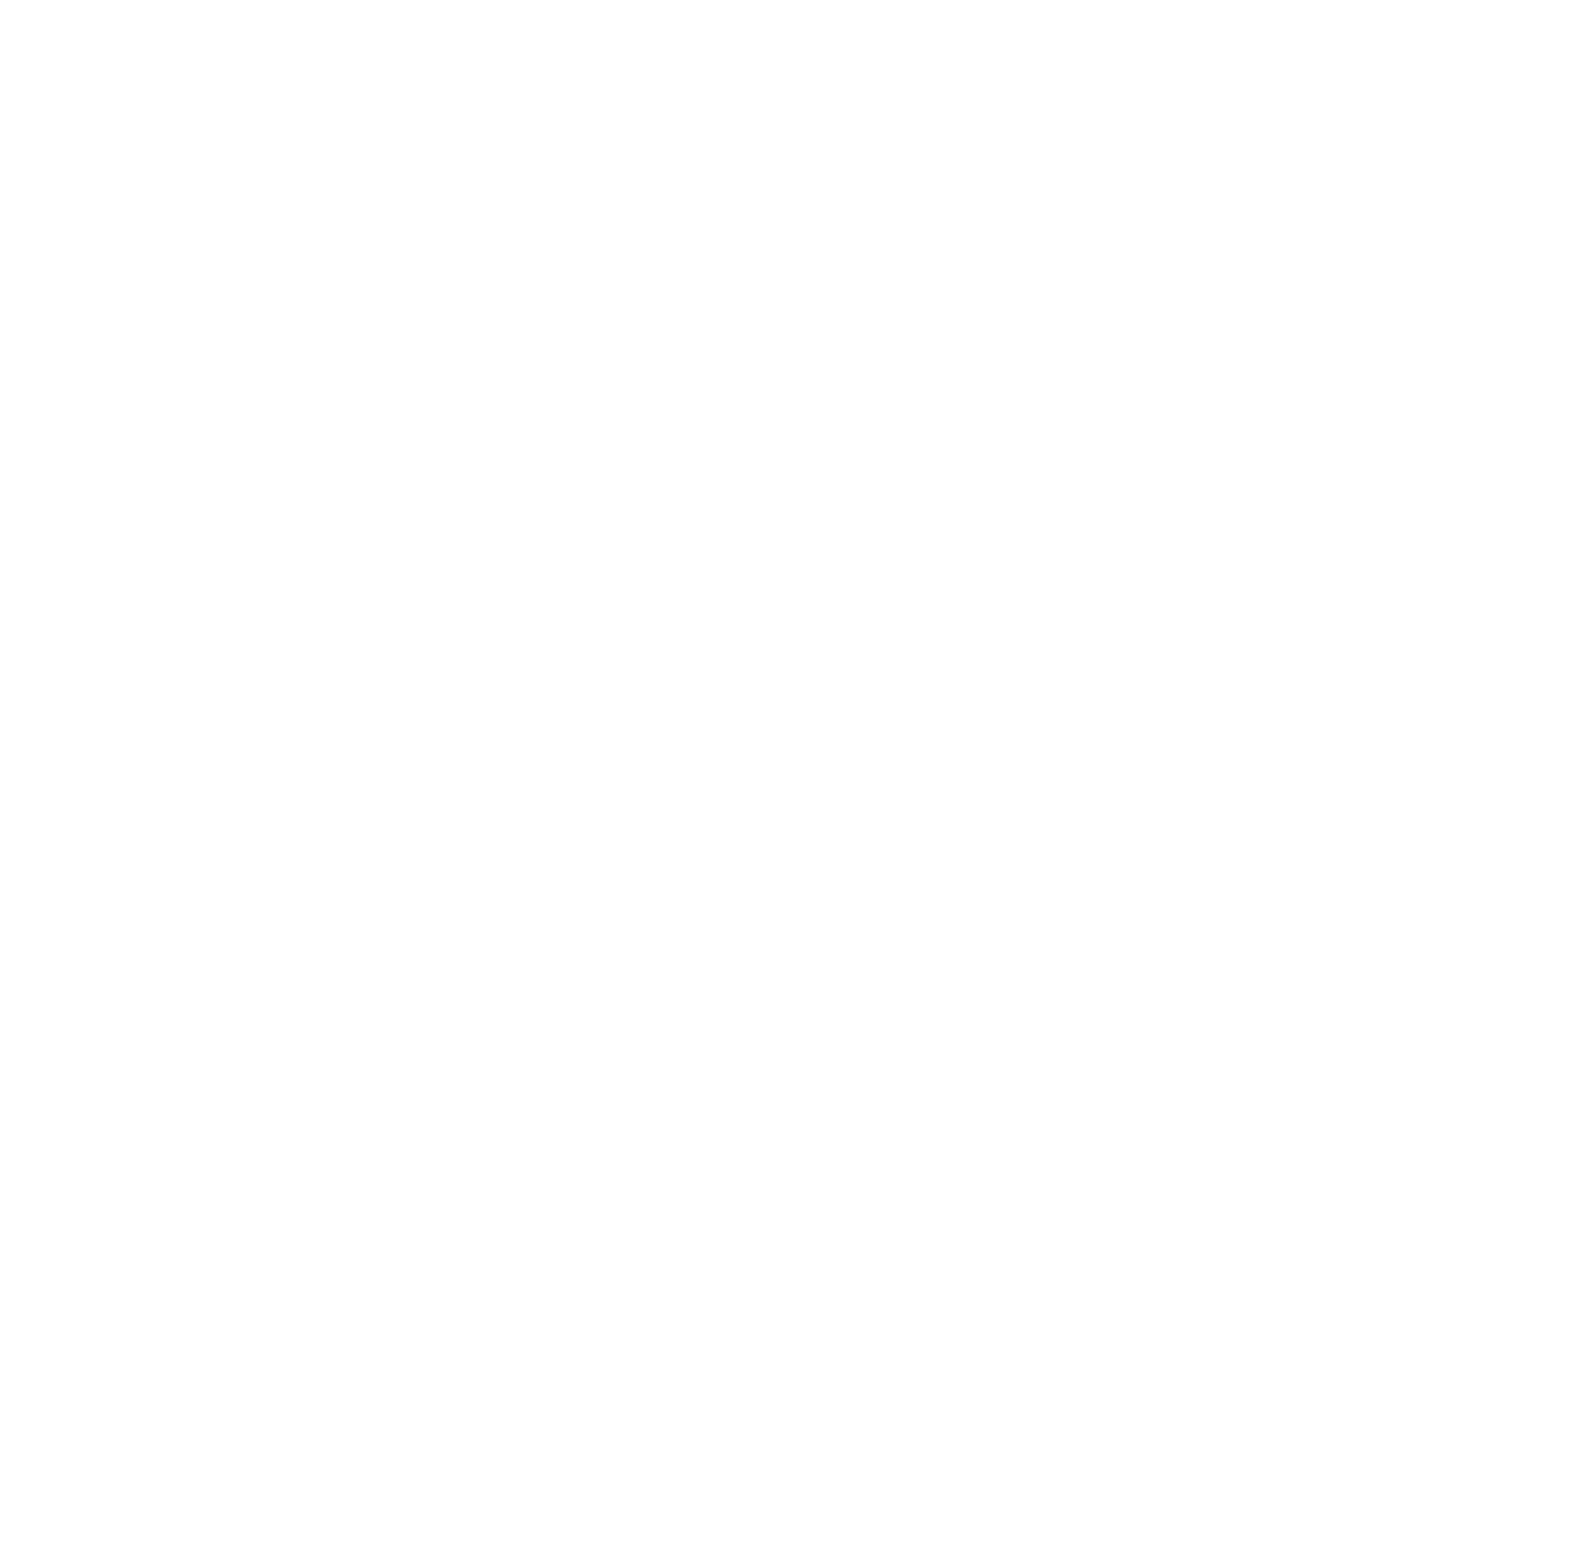 illumin logo pour fonds sombres (PNG transparent)